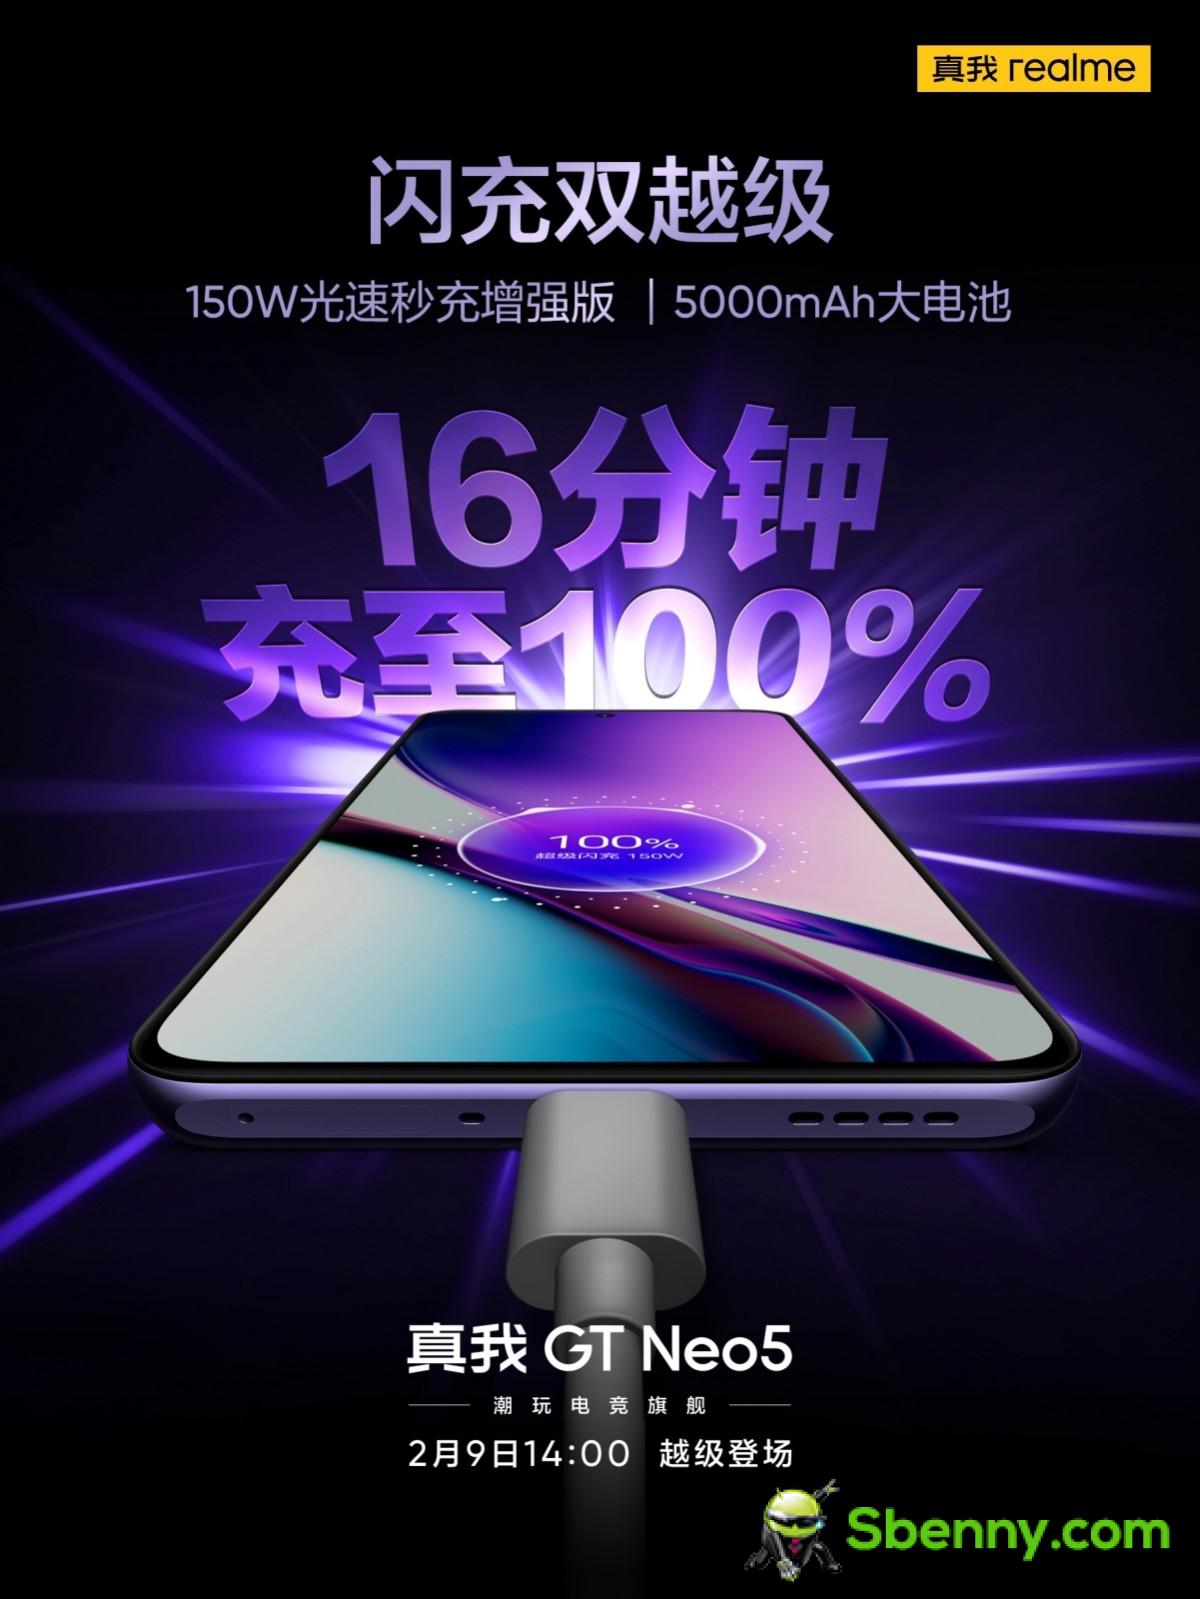 Realme bevestigt dat GT Neo 5 een 150W-variant zal hebben